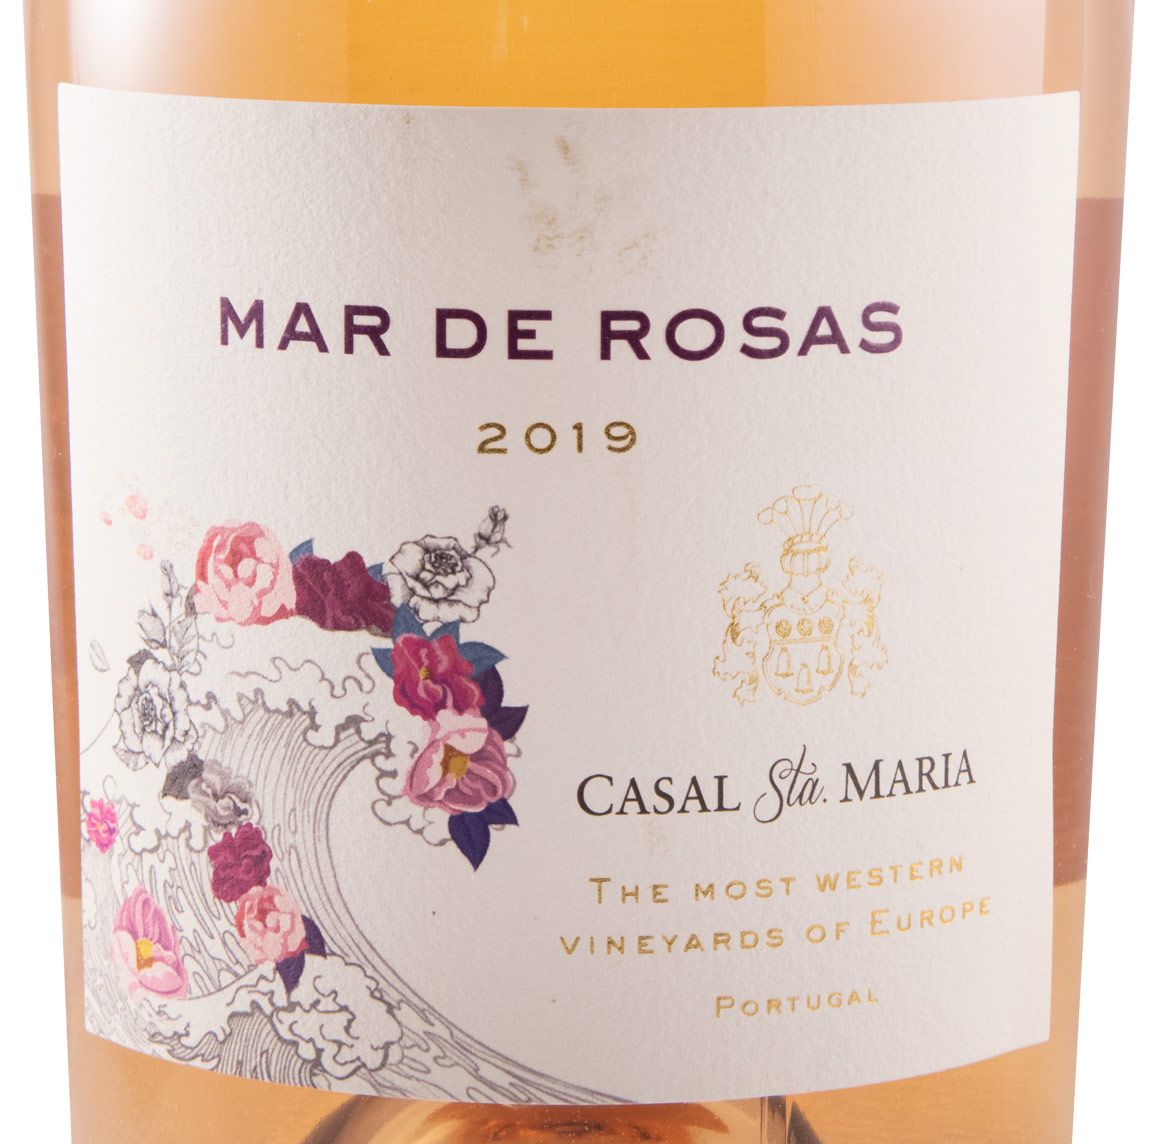 2019 Casal Sta. Maria Mar de Rosas rose 1.5L